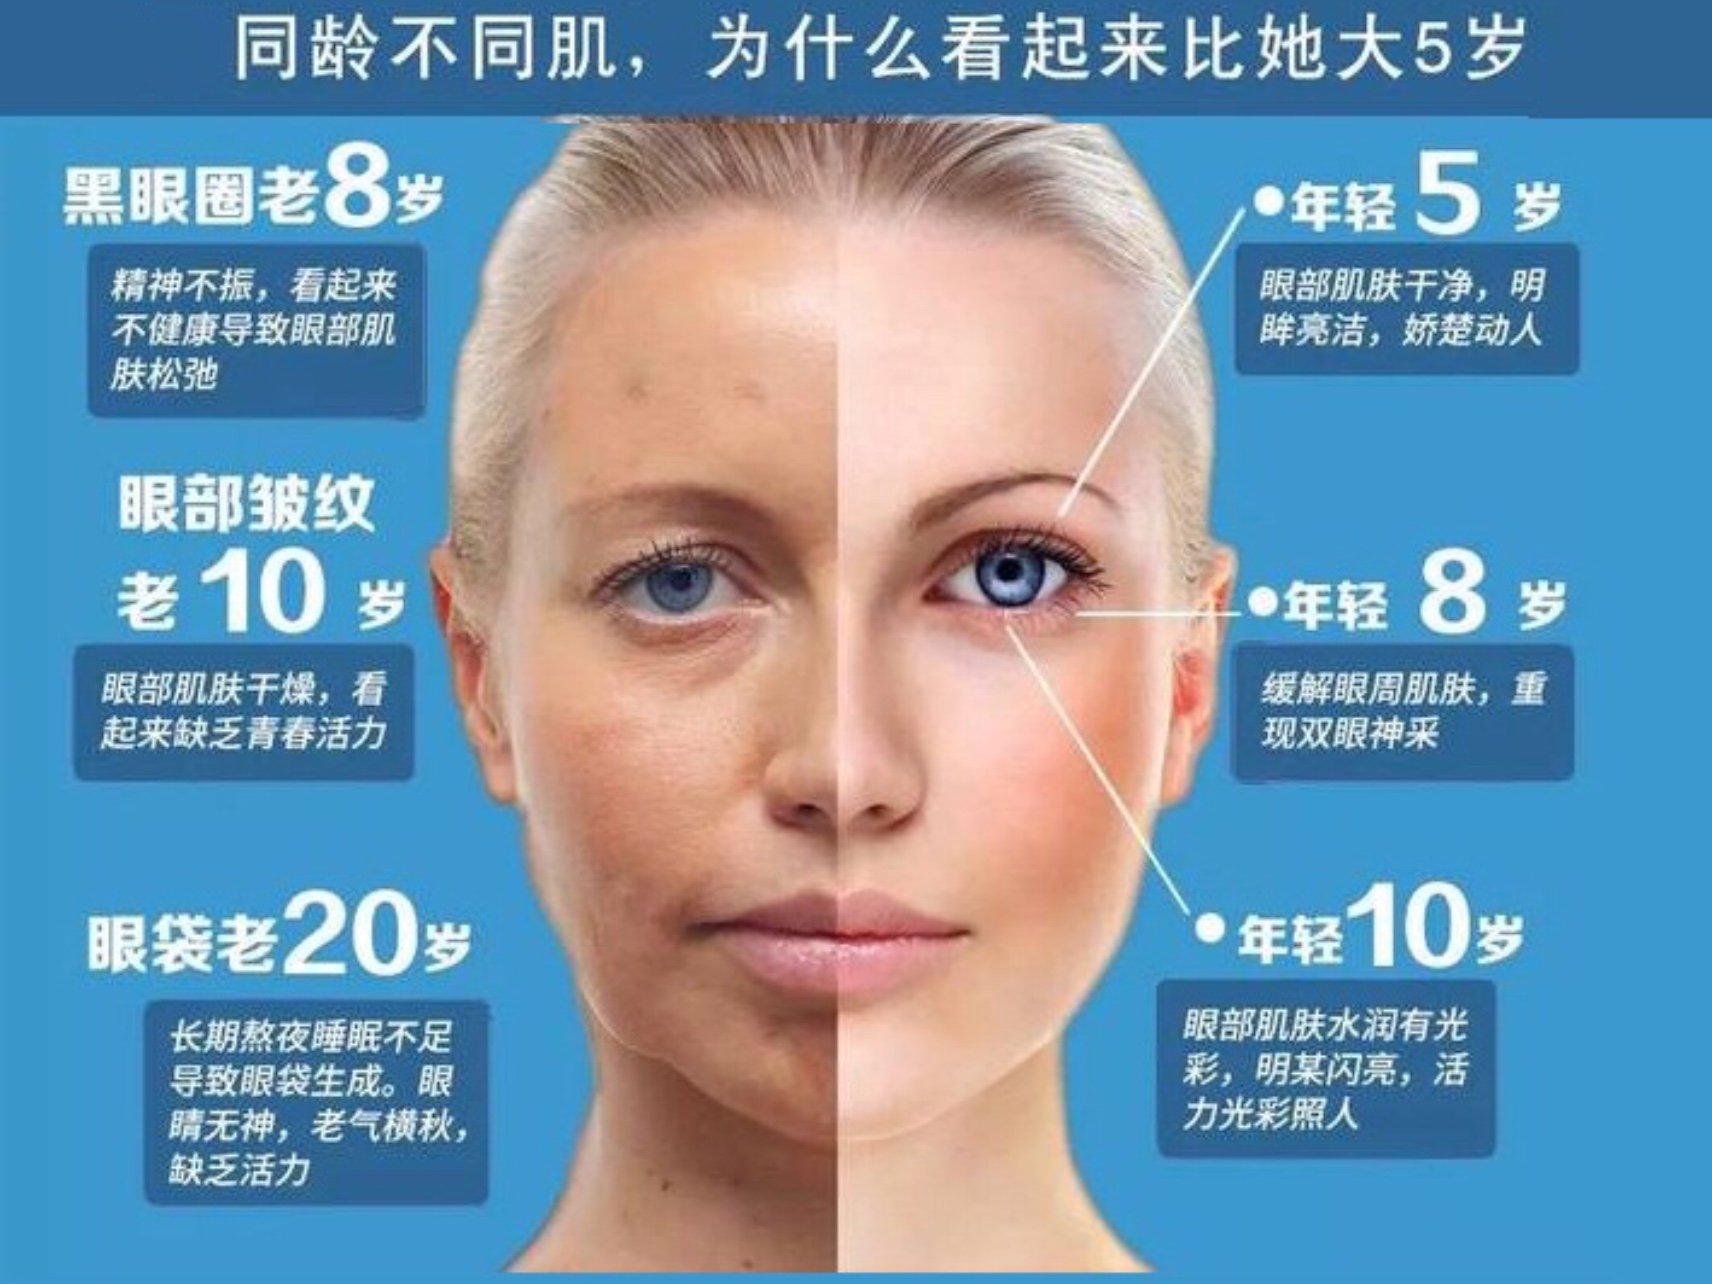 其实皮肤衰老除了和年龄有关之外,还会受到日常生活习惯的影响